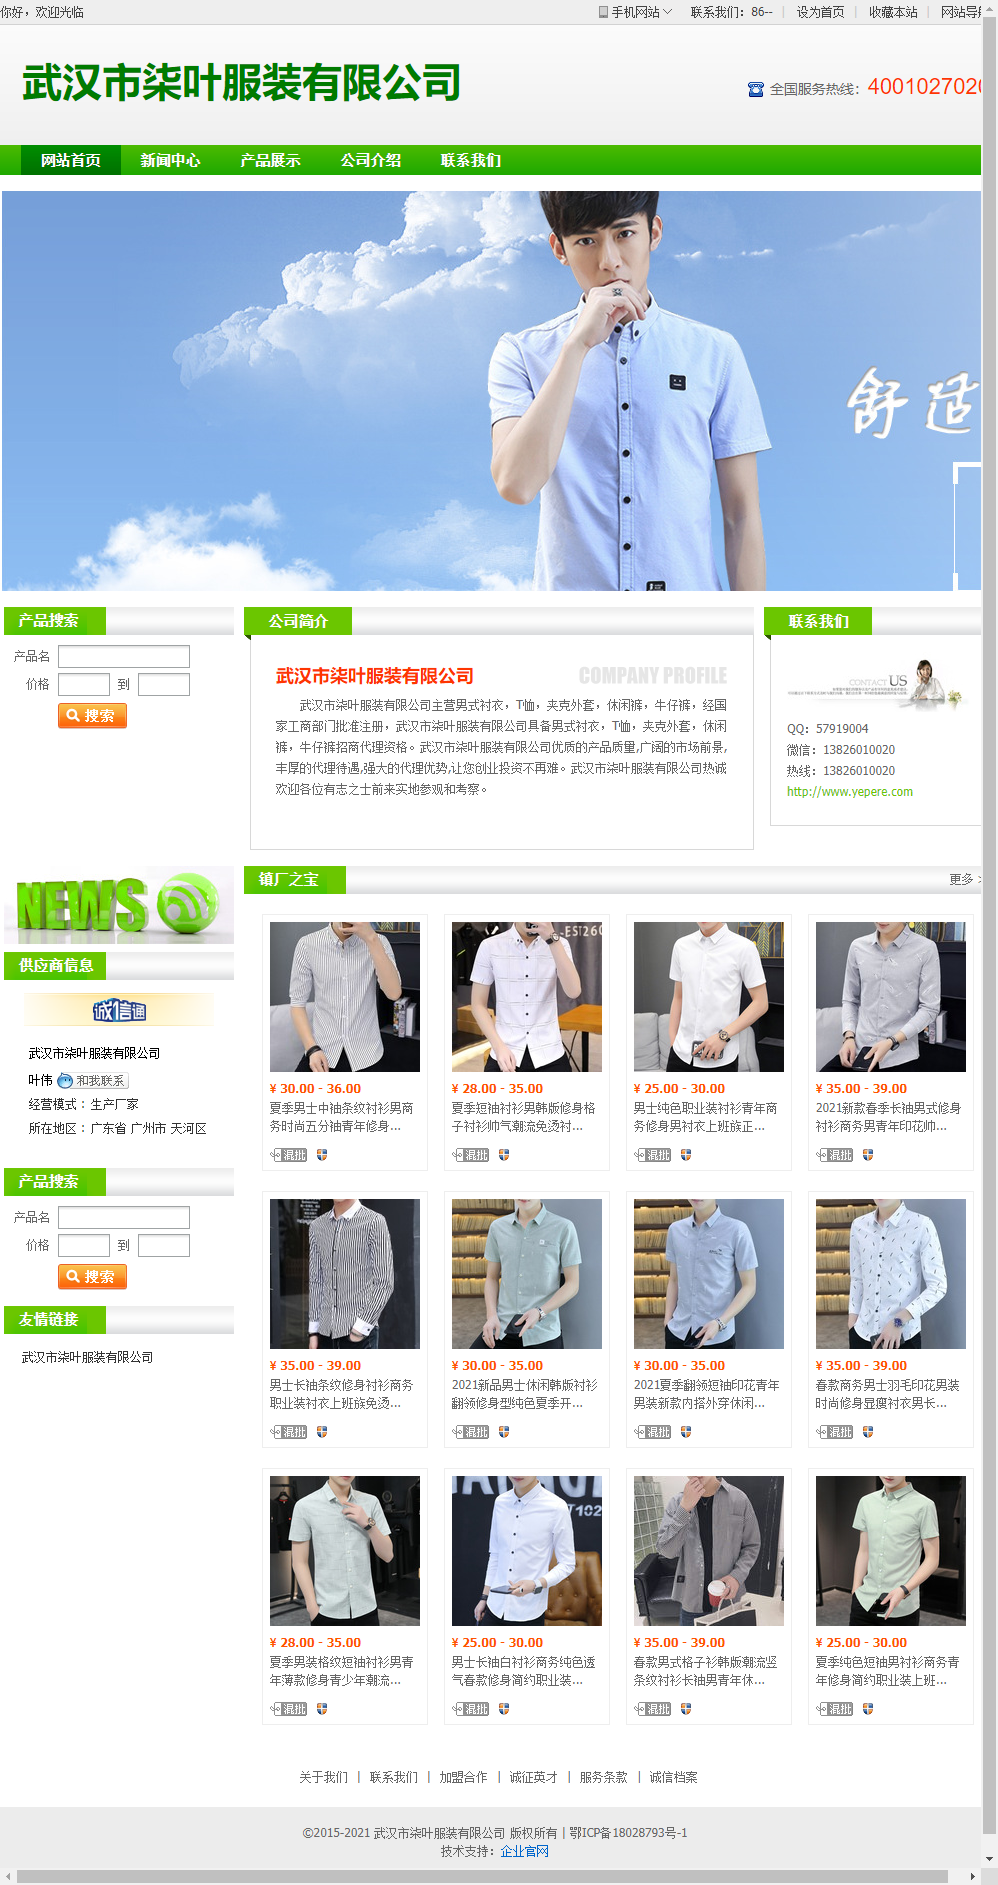 武汉市柒叶服装有限公司网站案例